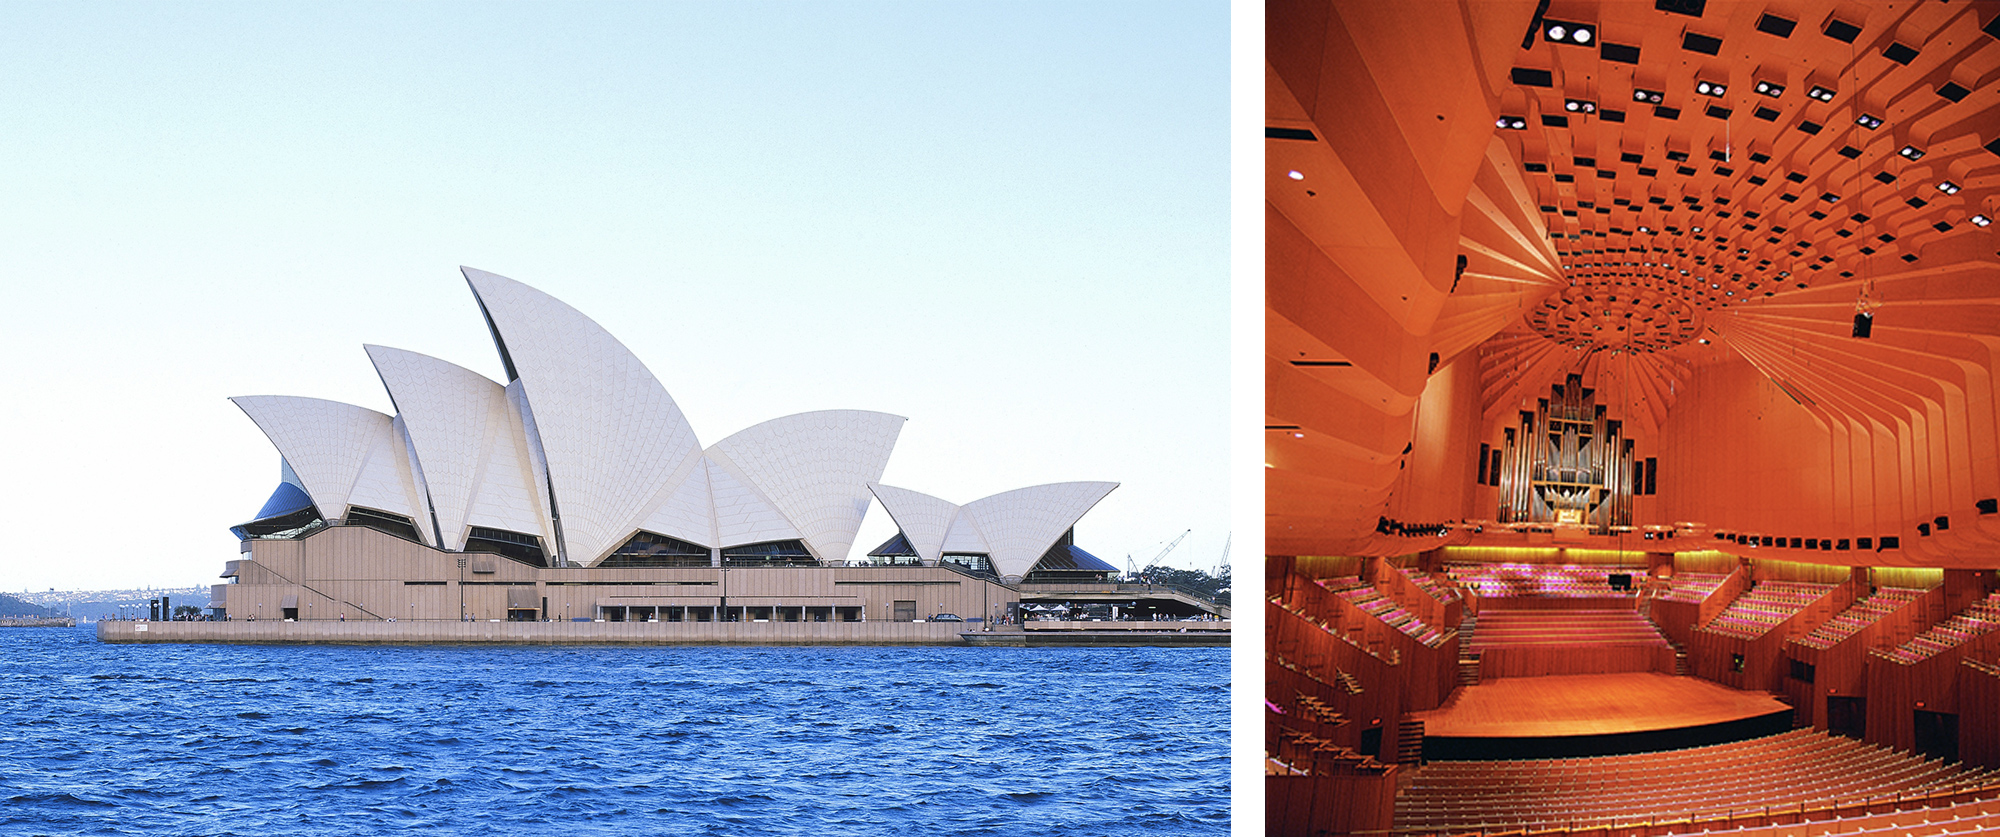 Nhiếp ảnh: lịch sự của Nhà hát Opera Sydney